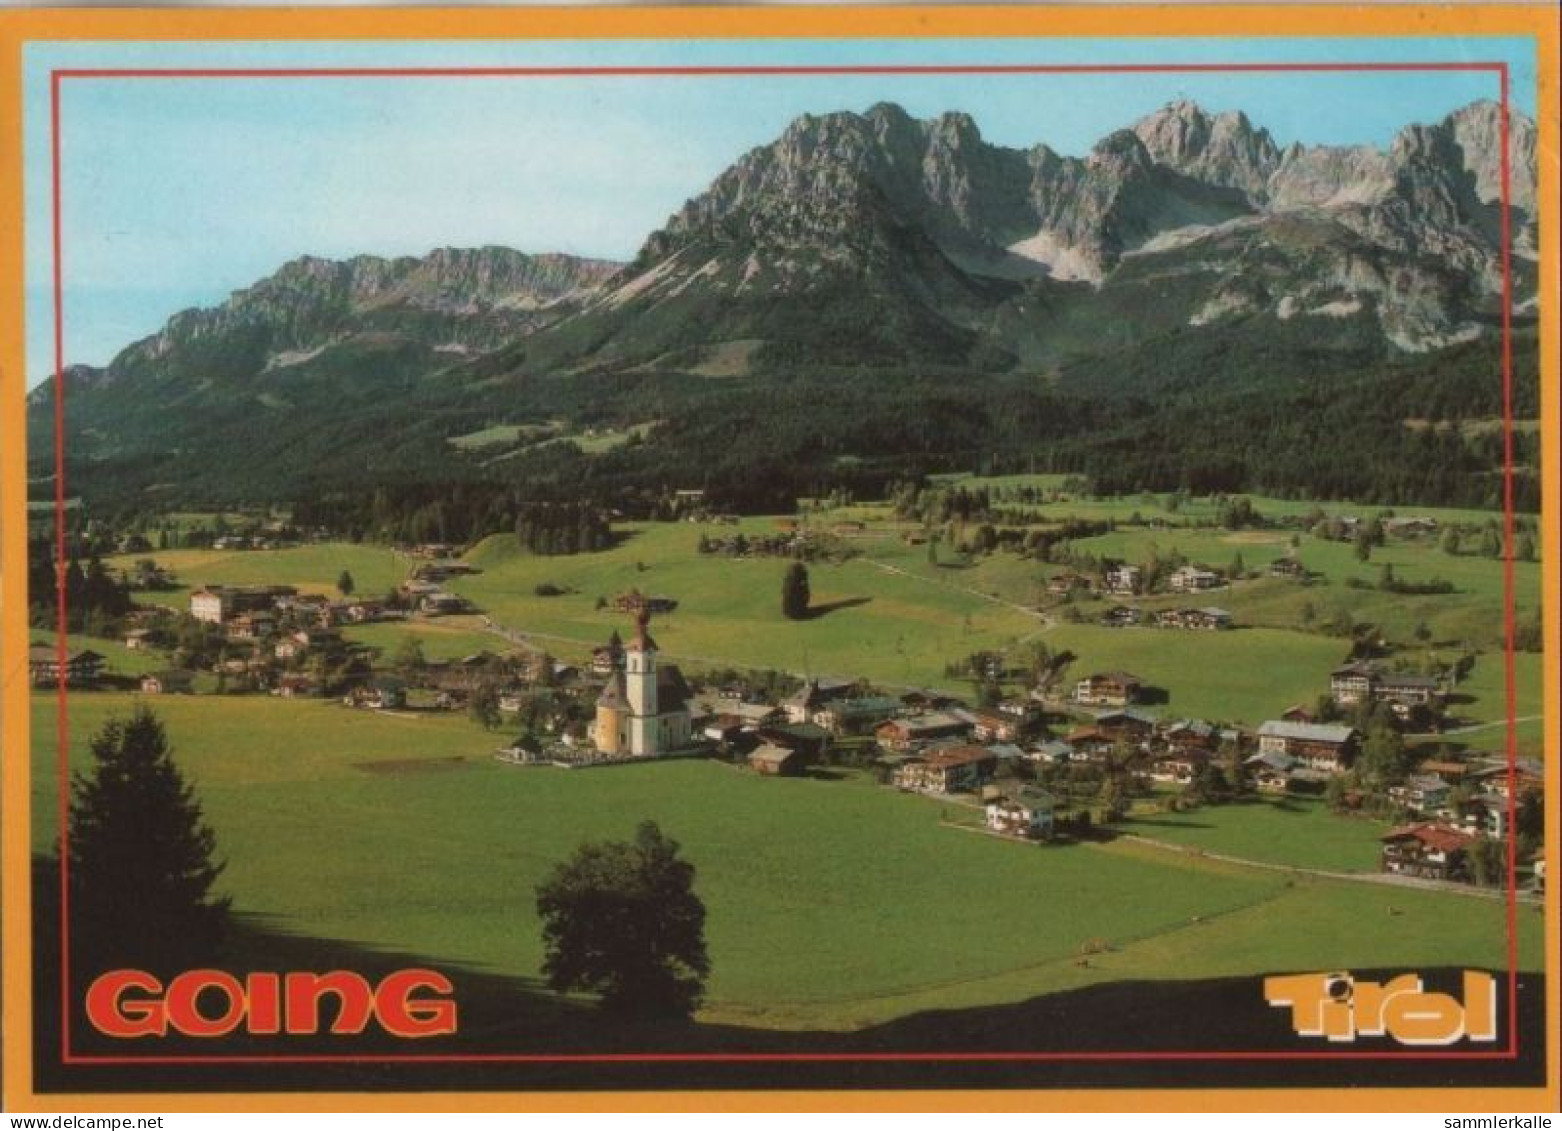 108487 - Going - Österreich - Blick Von Oben - Kitzbühel